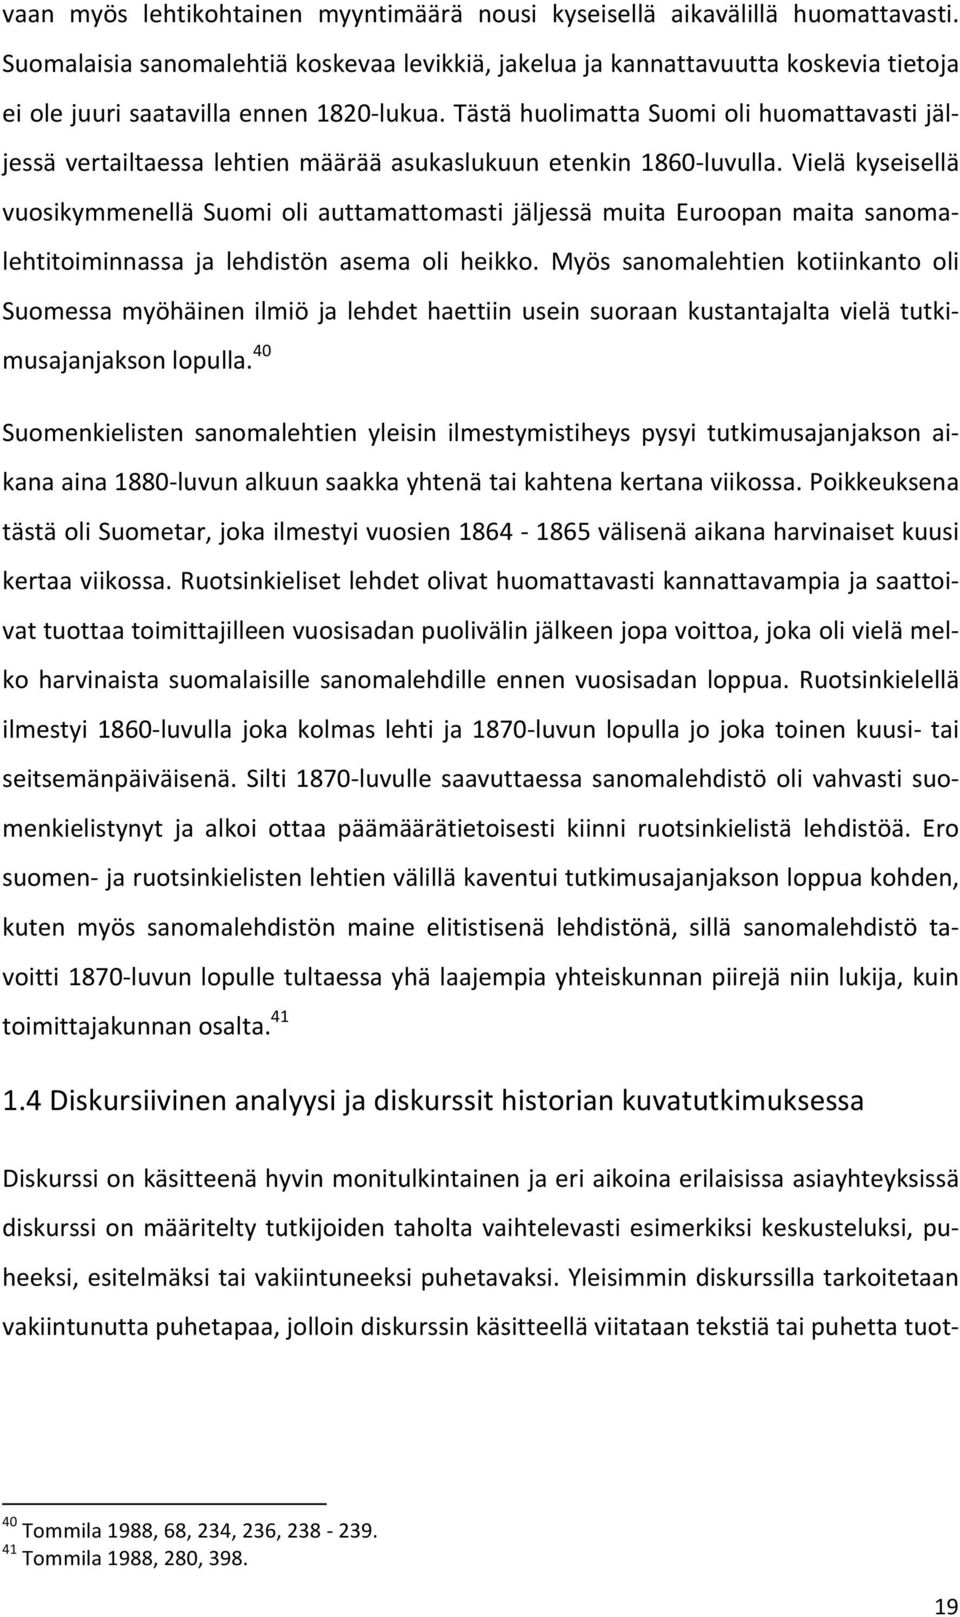 Tästä huolimatta Suomi oli huomattavasti jäl- jessä vertailtaessa lehtien määrää asukaslukuun etenkin 1860- luvulla.